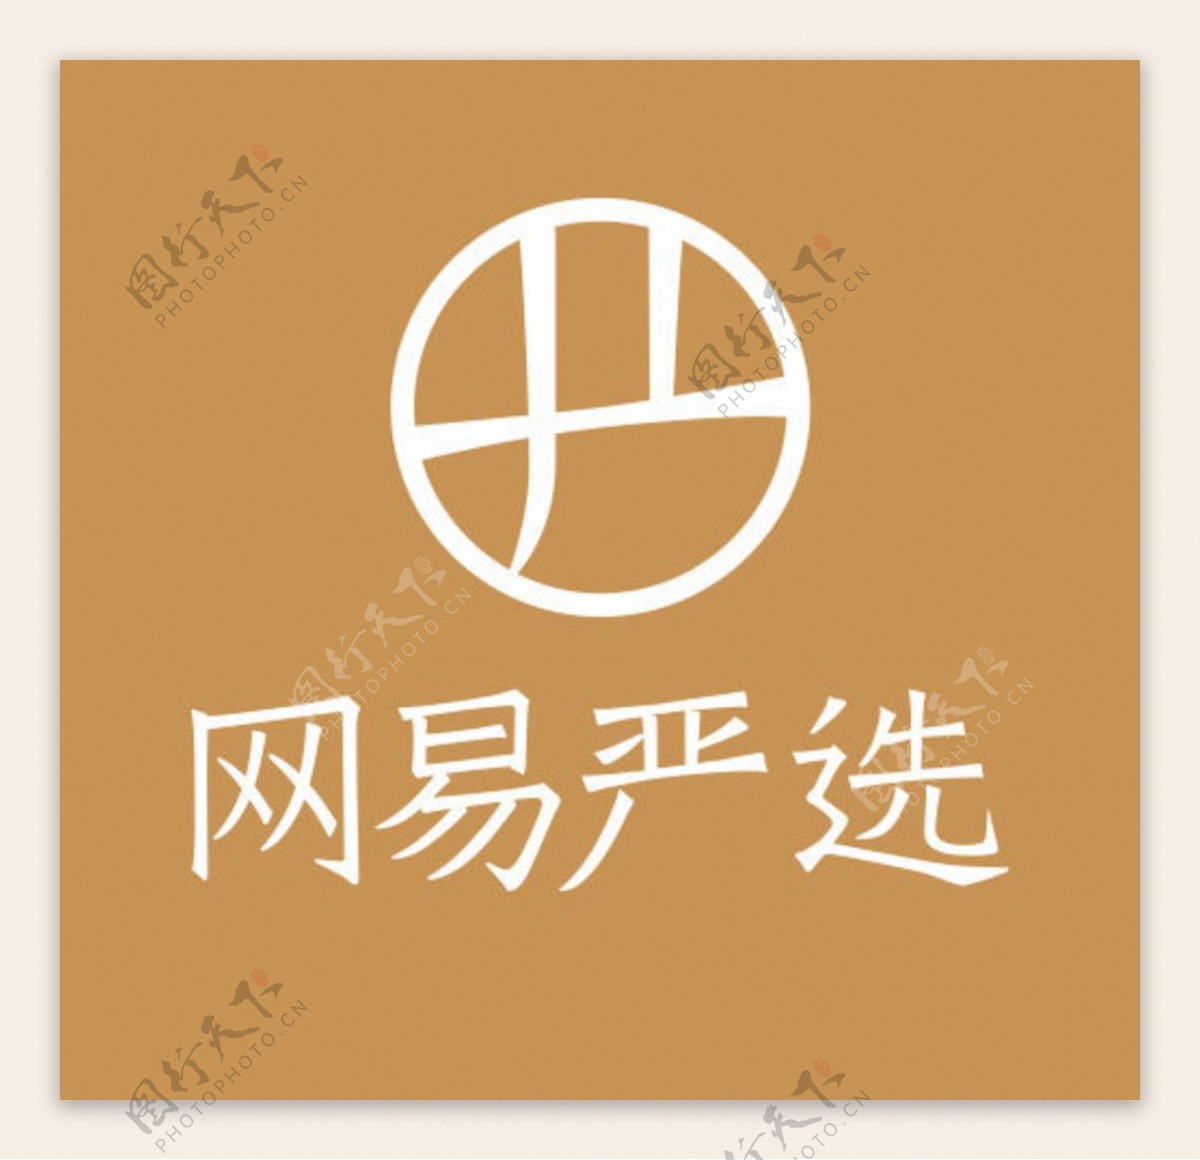 网易严选logo